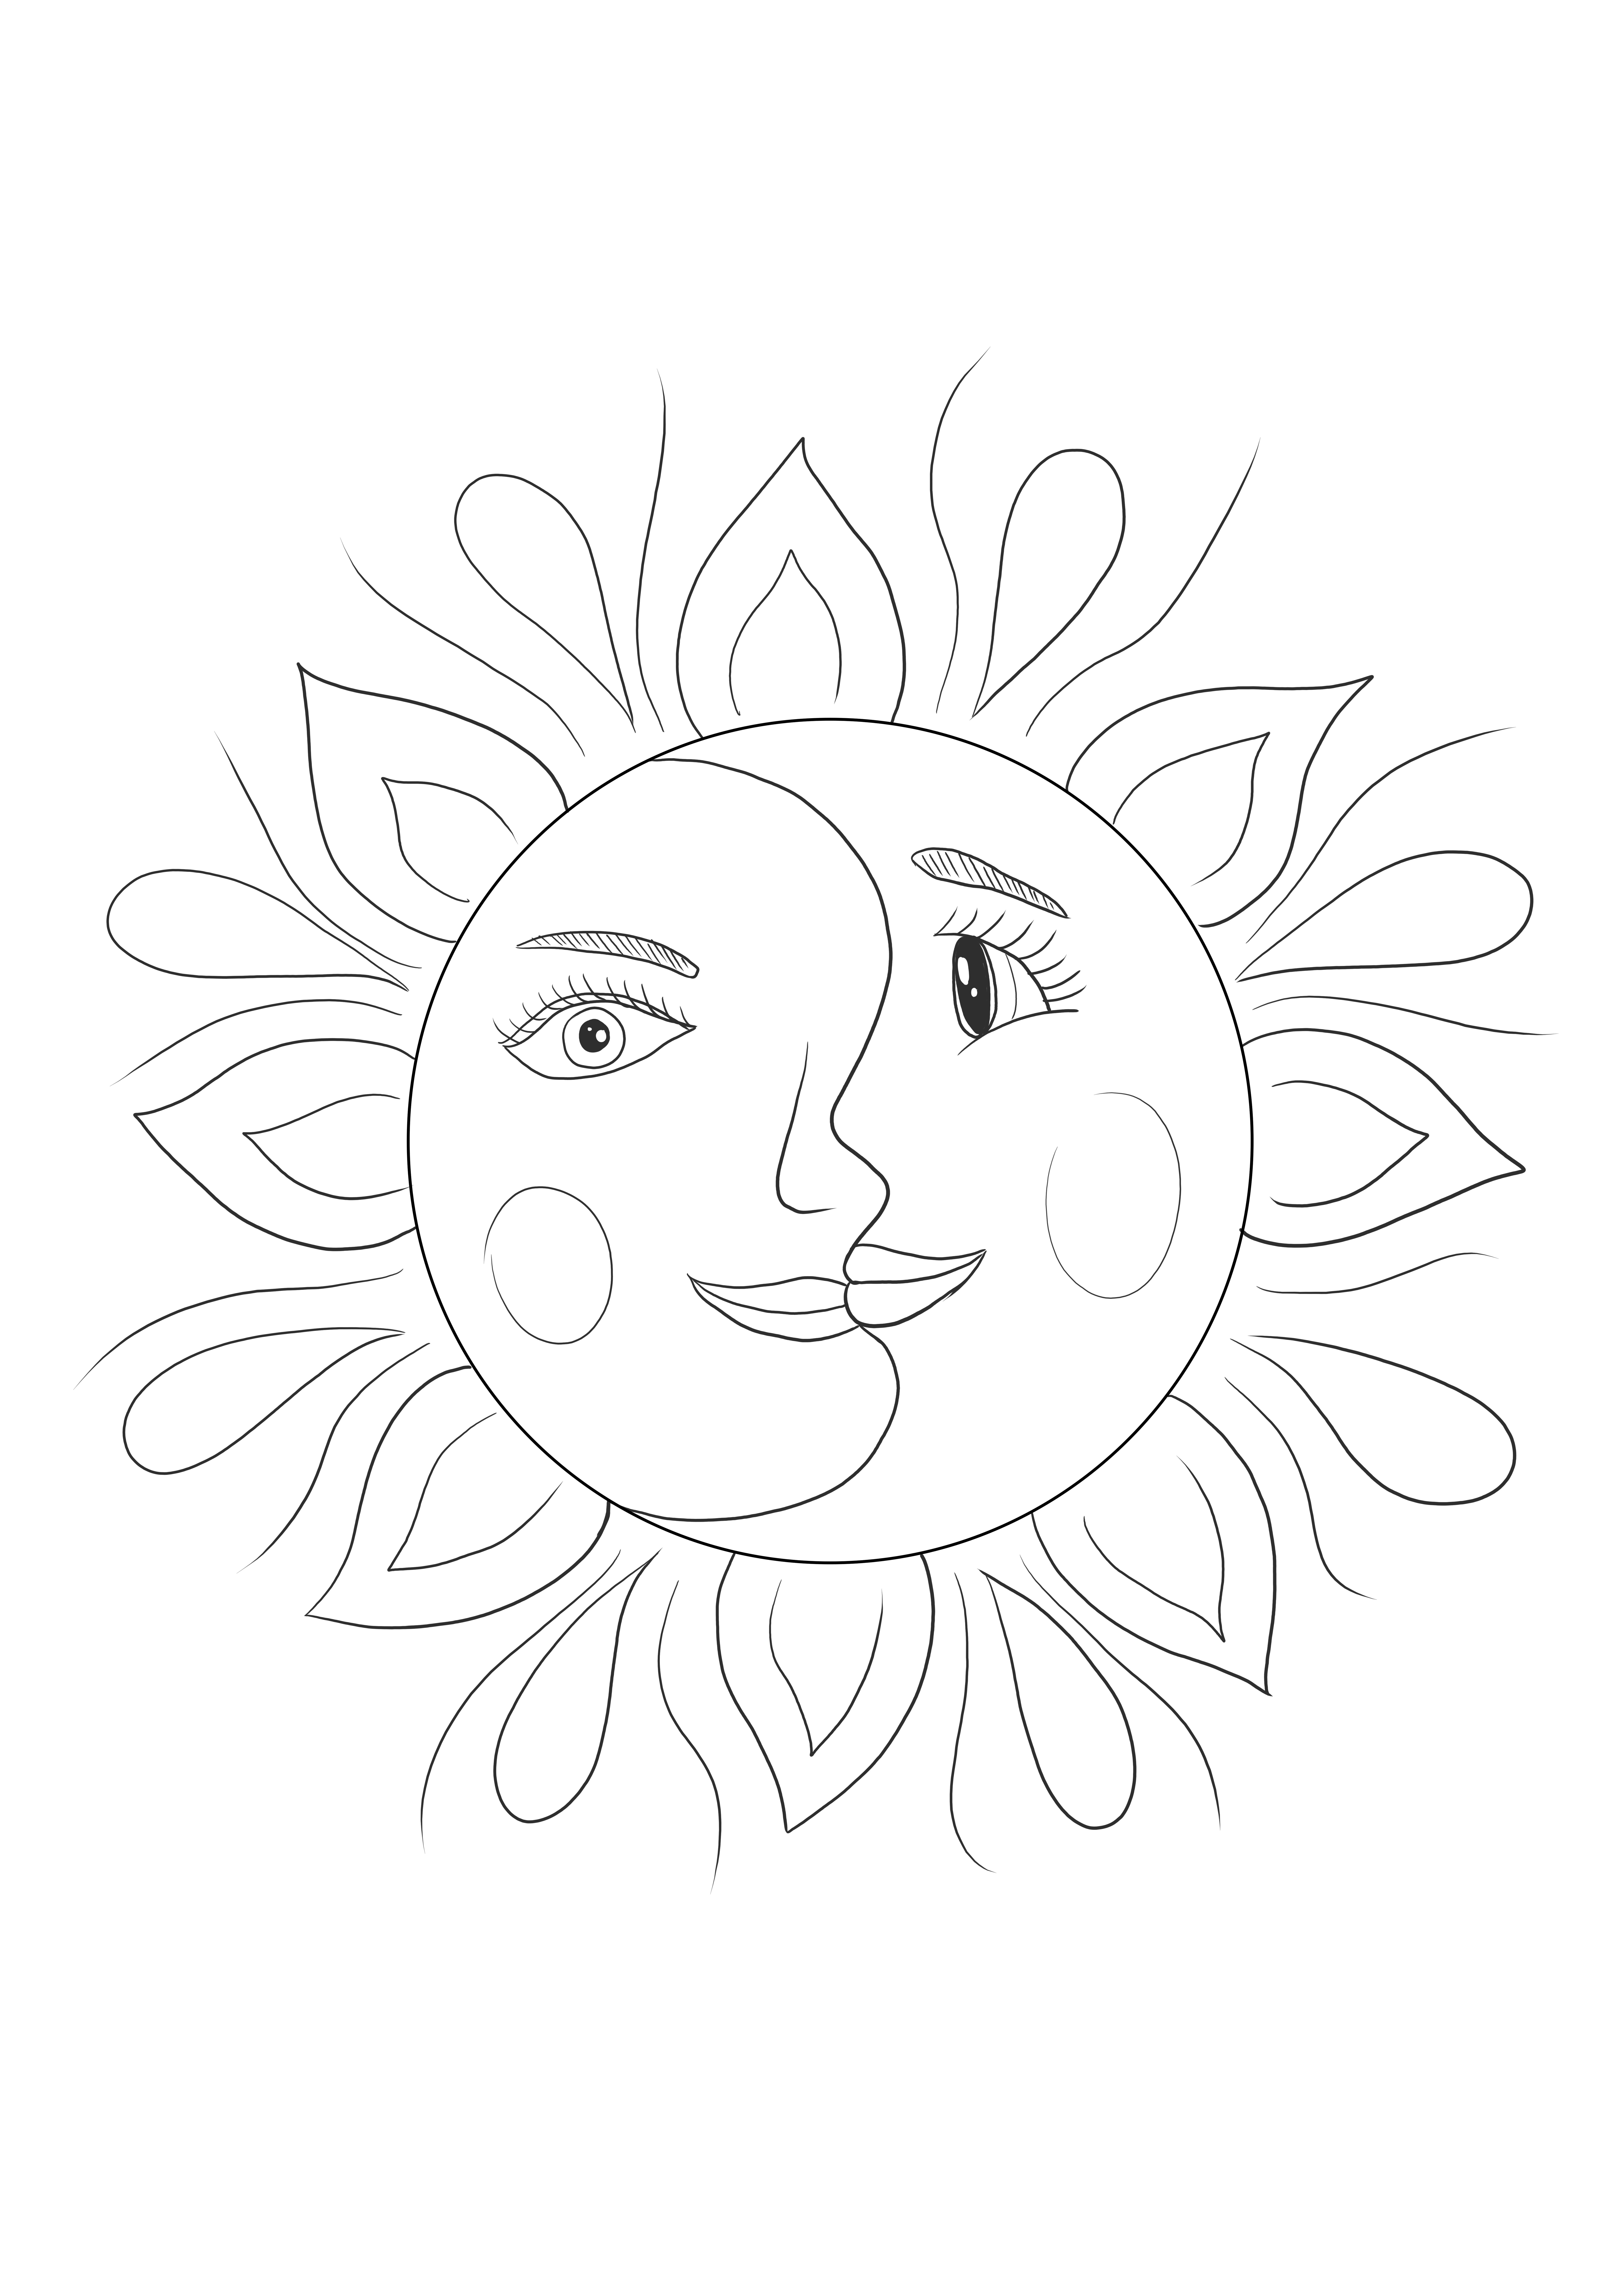 Nap és Hold pszichedelikus művészeti stílusban művészetkedvelő gyerekeknek vagy felnőtteknek